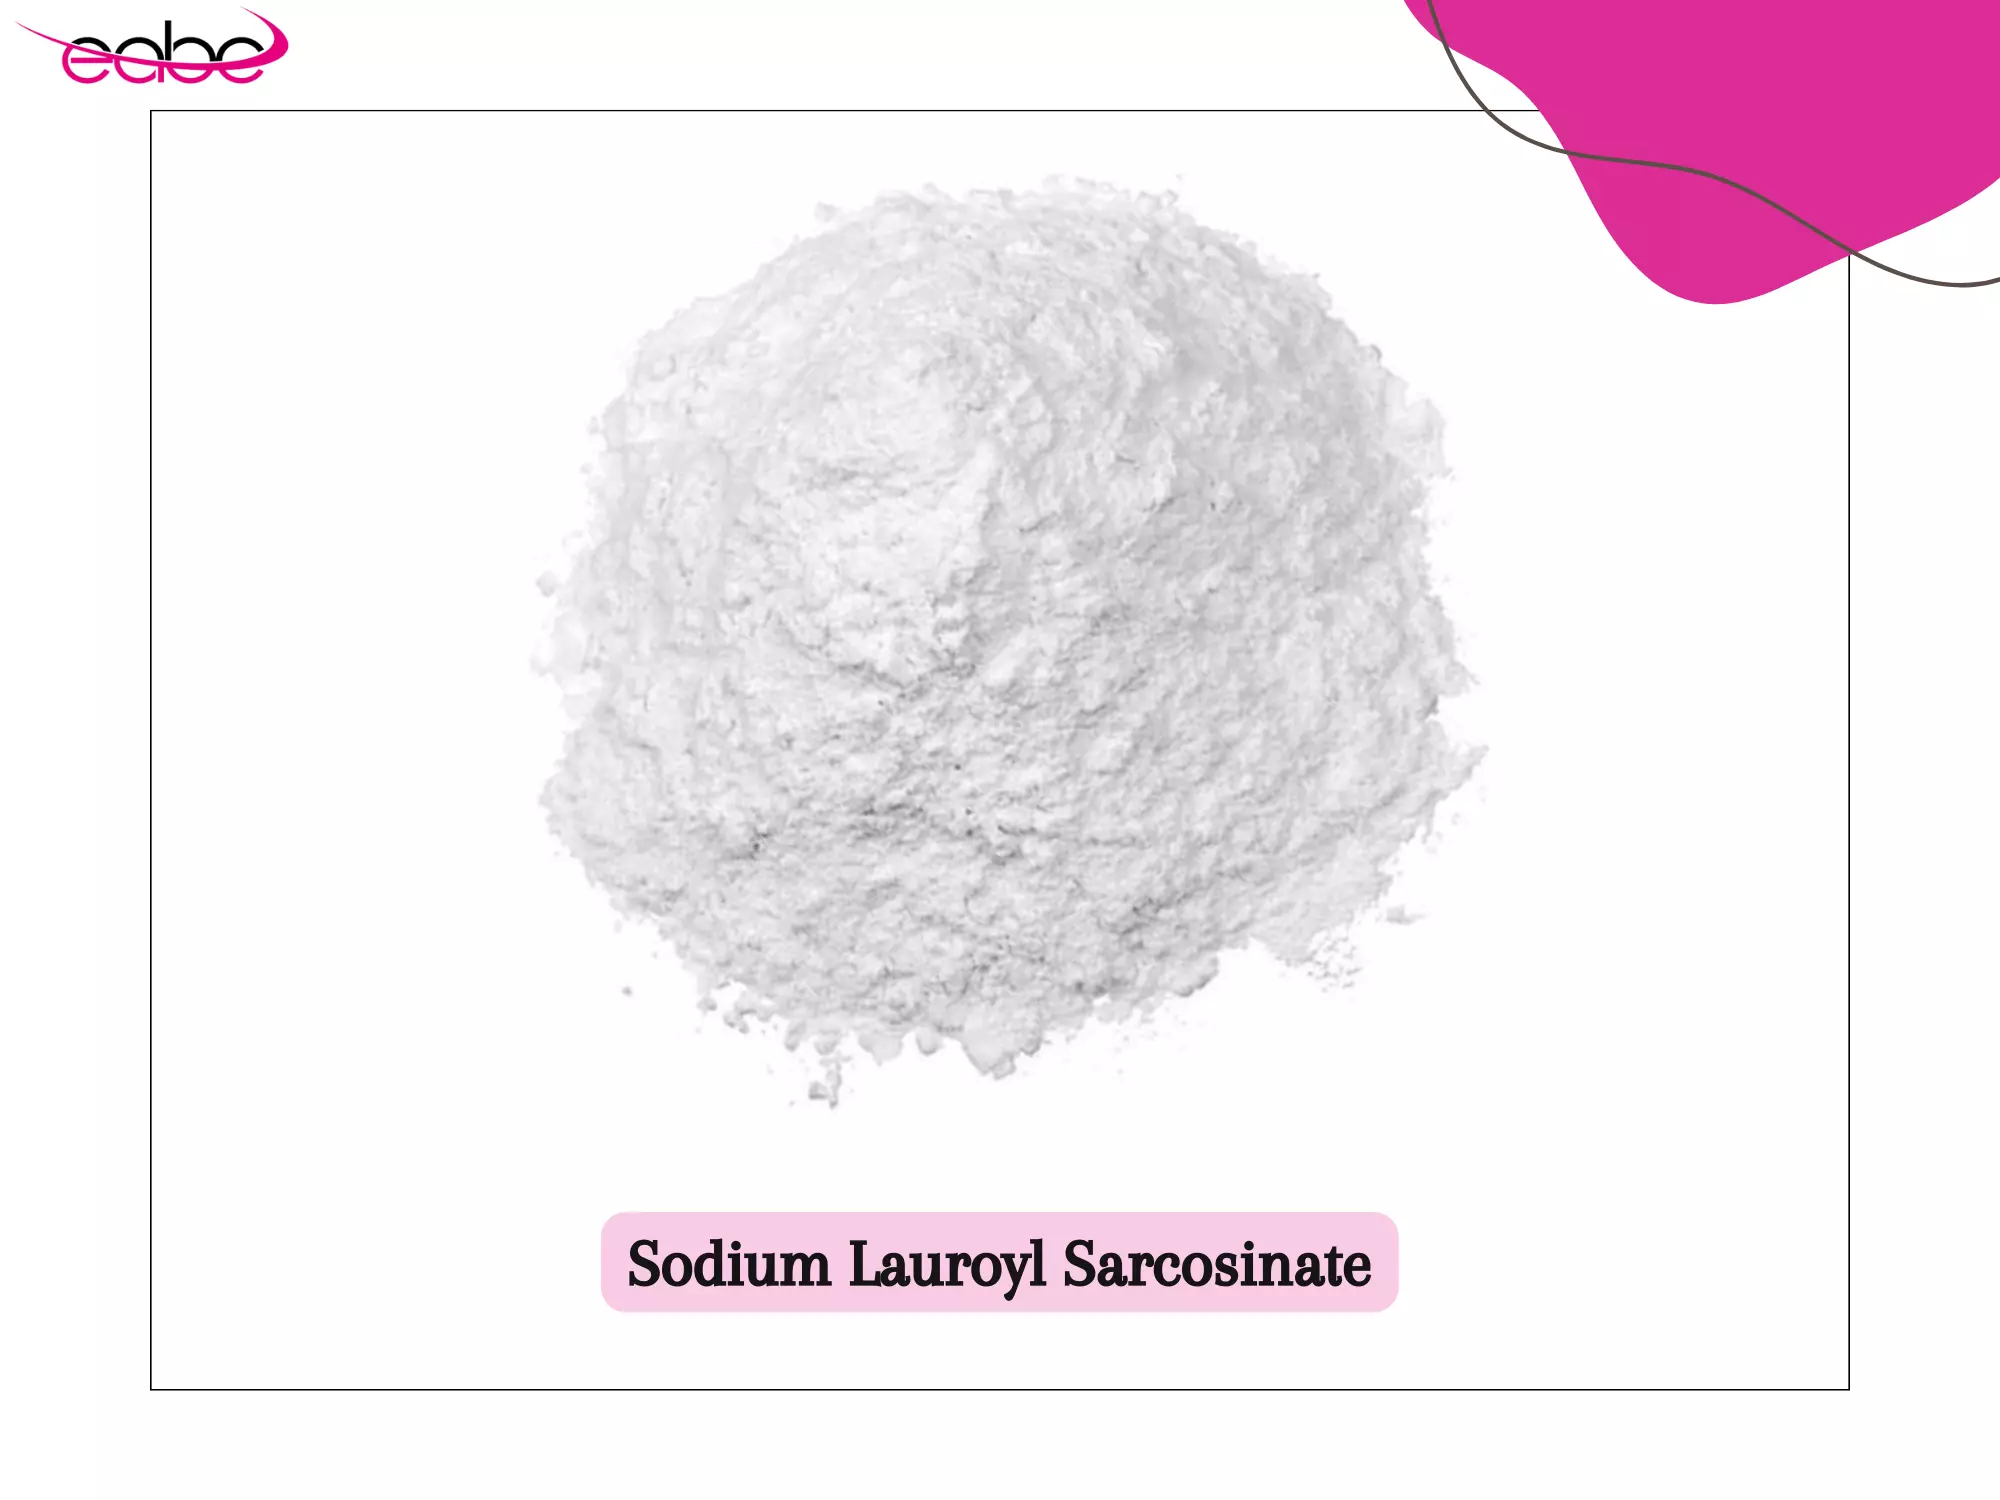 Sodium Lauroyl Sarcosinate